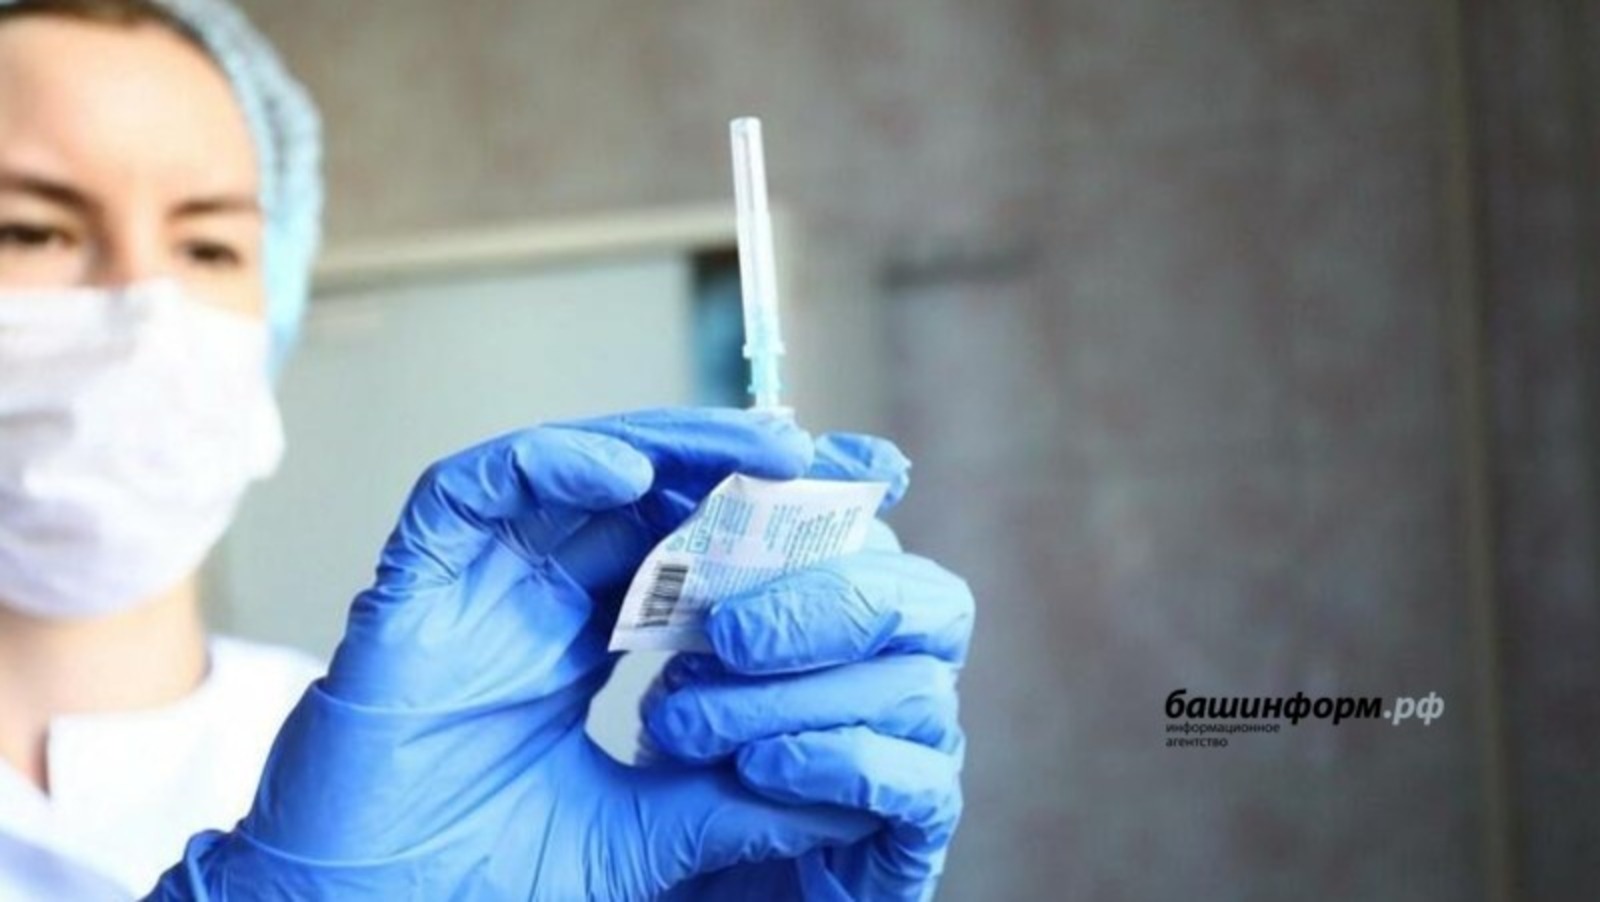 Вакцинация подростков от Covid-19 начнется уже в этом году - глава Минздрава России